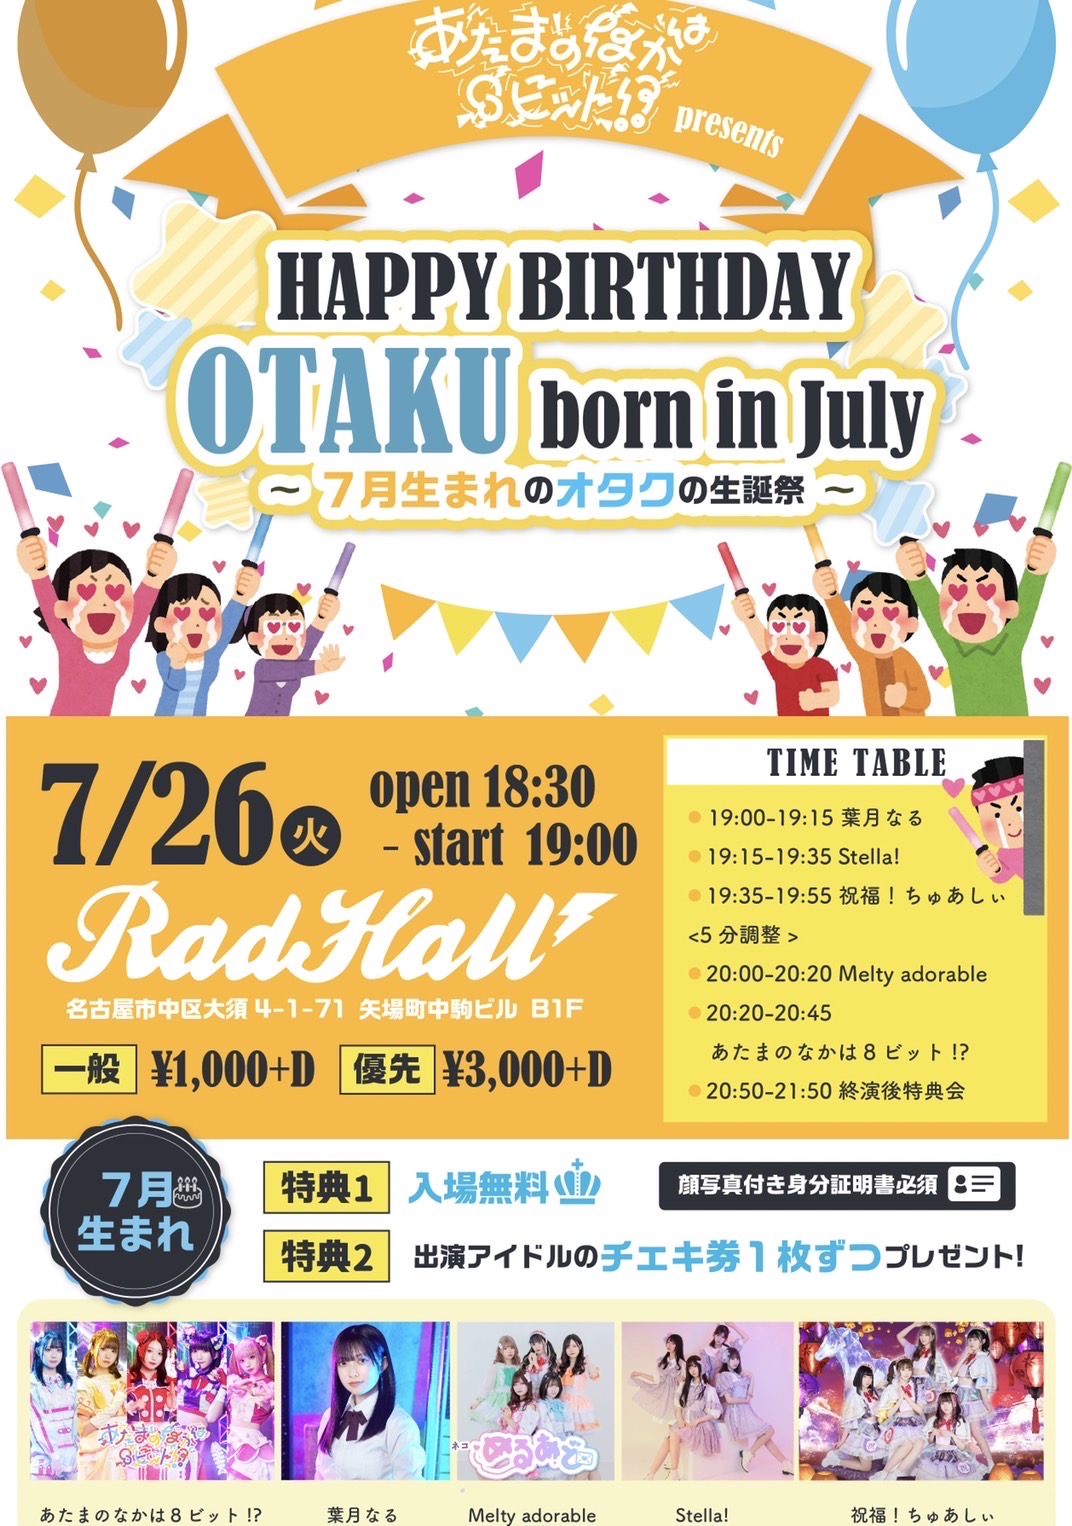 あたまのなかは8ビットpre. HAPPY BIRTHDAY OTAKU born in July